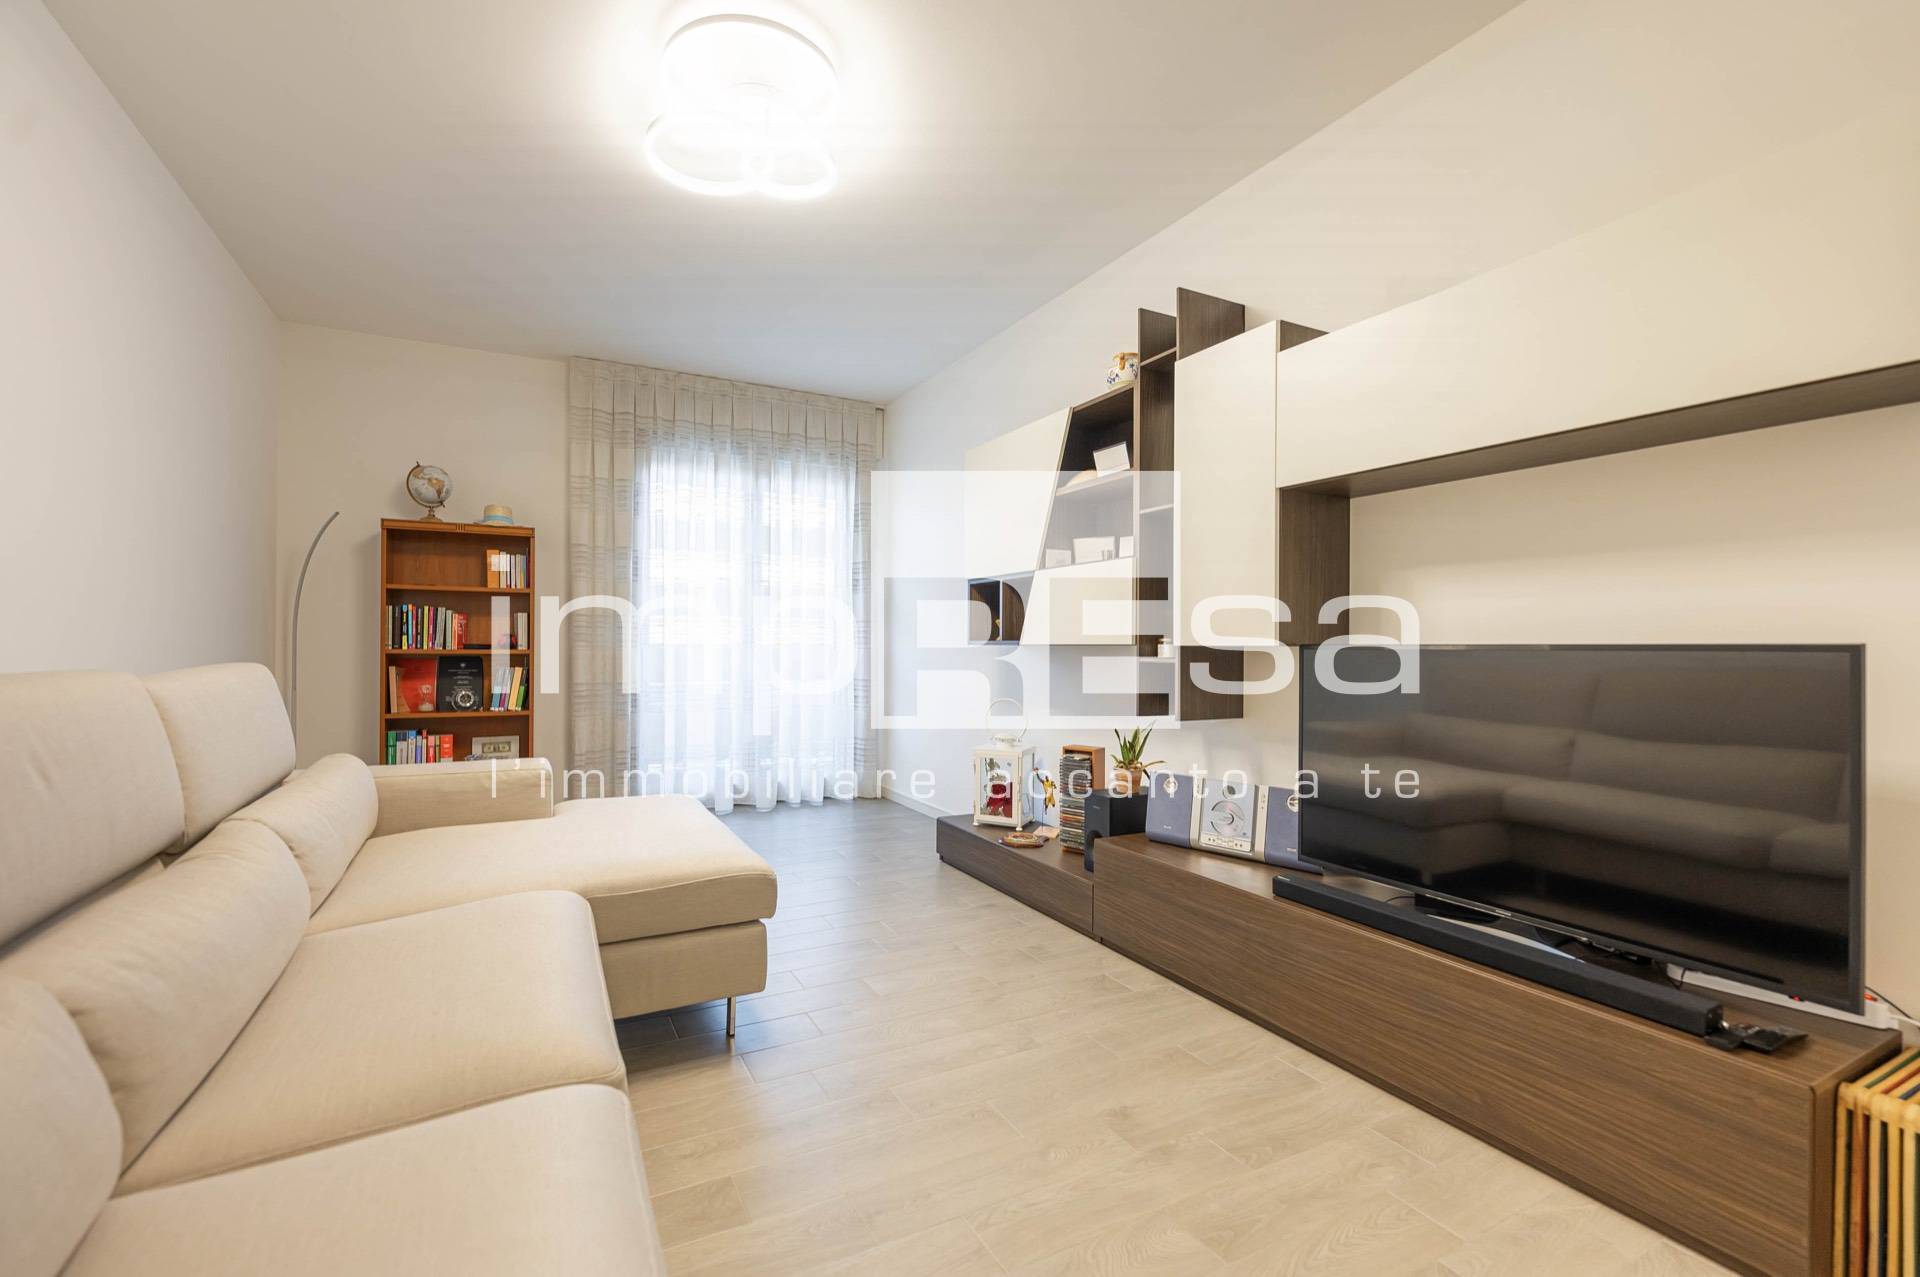 Appartamento in vendita a Conegliano, 4 locali, zona Località: Lourdes, prezzo € 273.000 | PortaleAgenzieImmobiliari.it